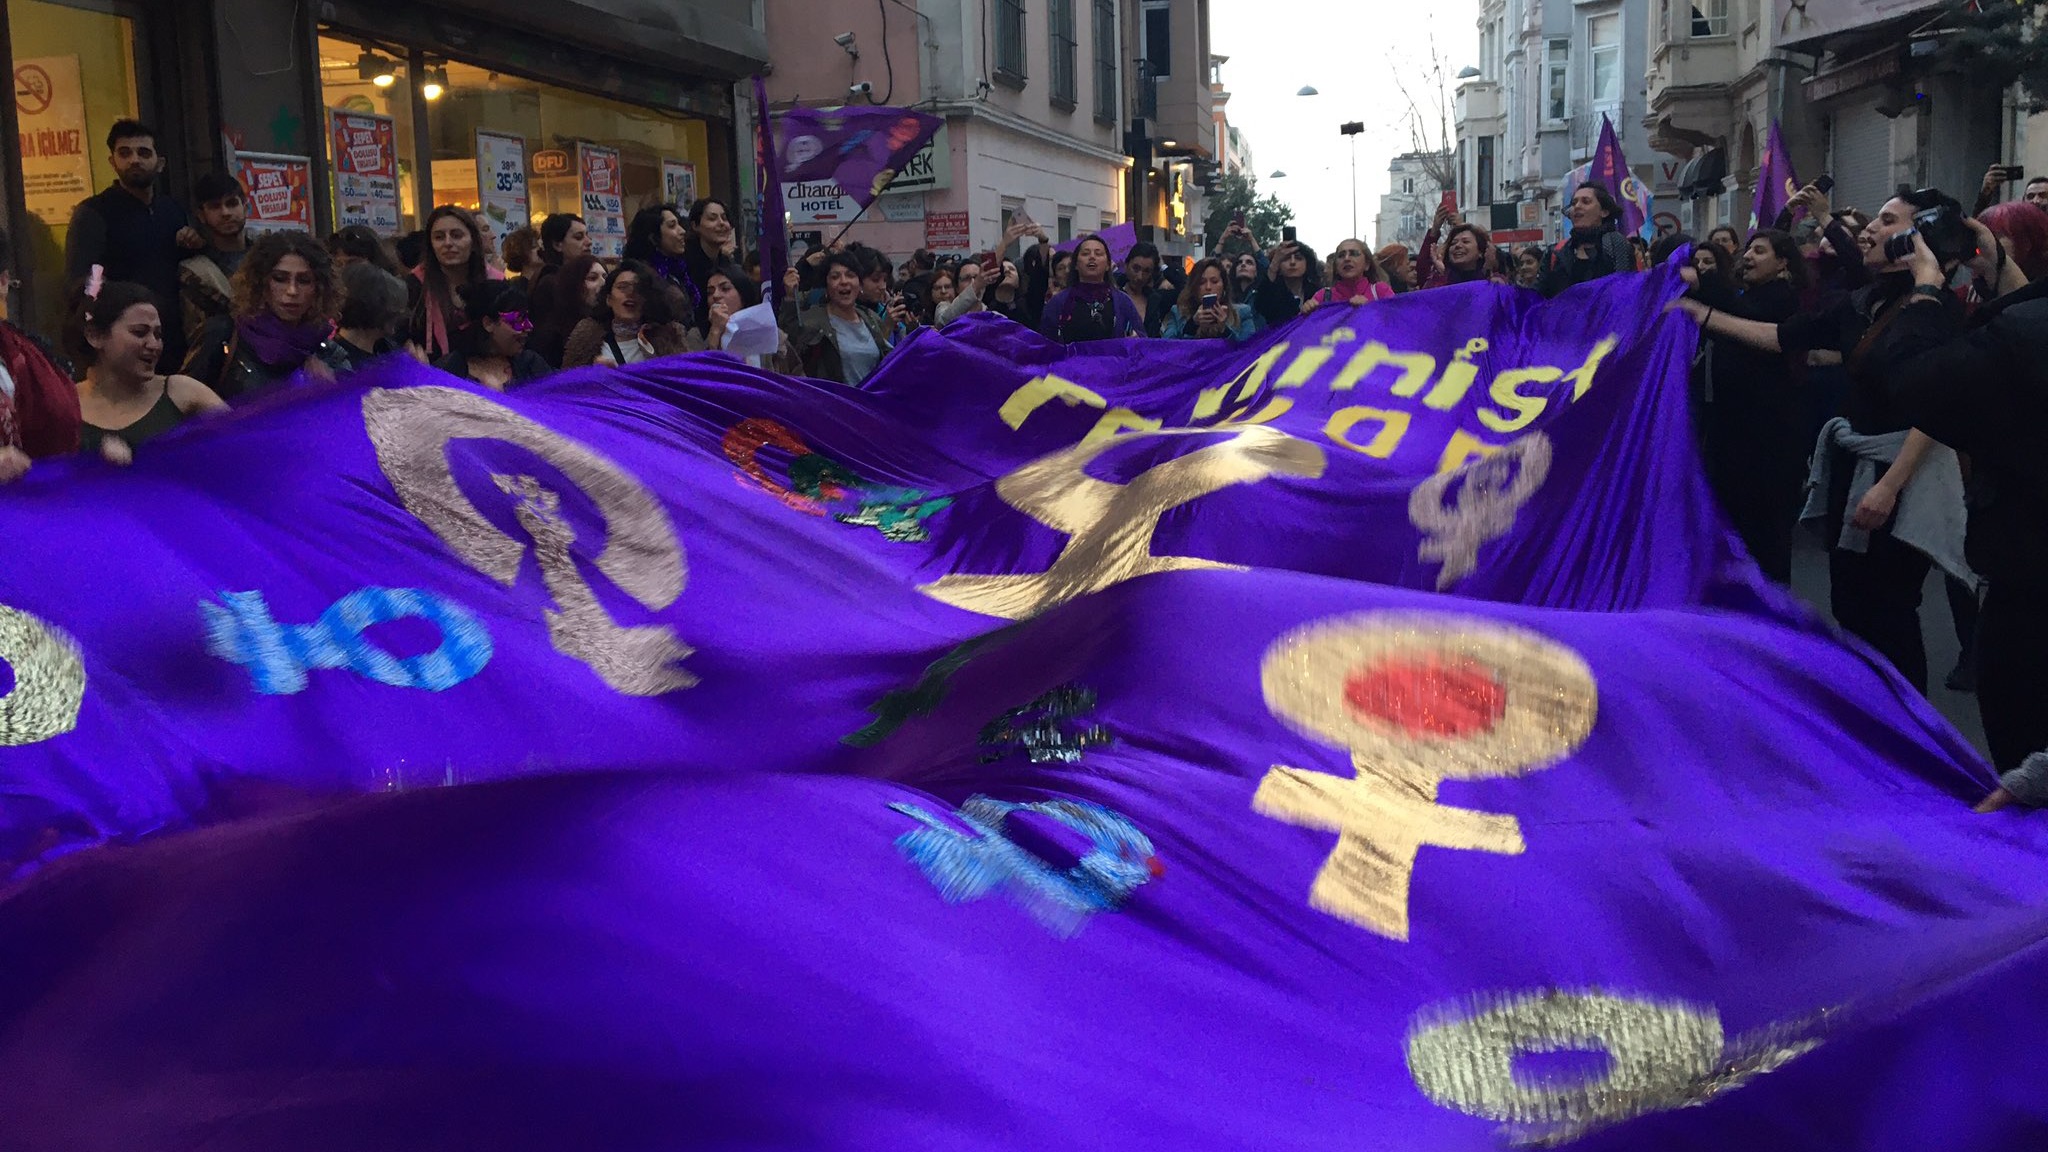 Valiliğin yasak kararına rağmen Feminist Gece Yürüyüşü için kadınlar bir arada